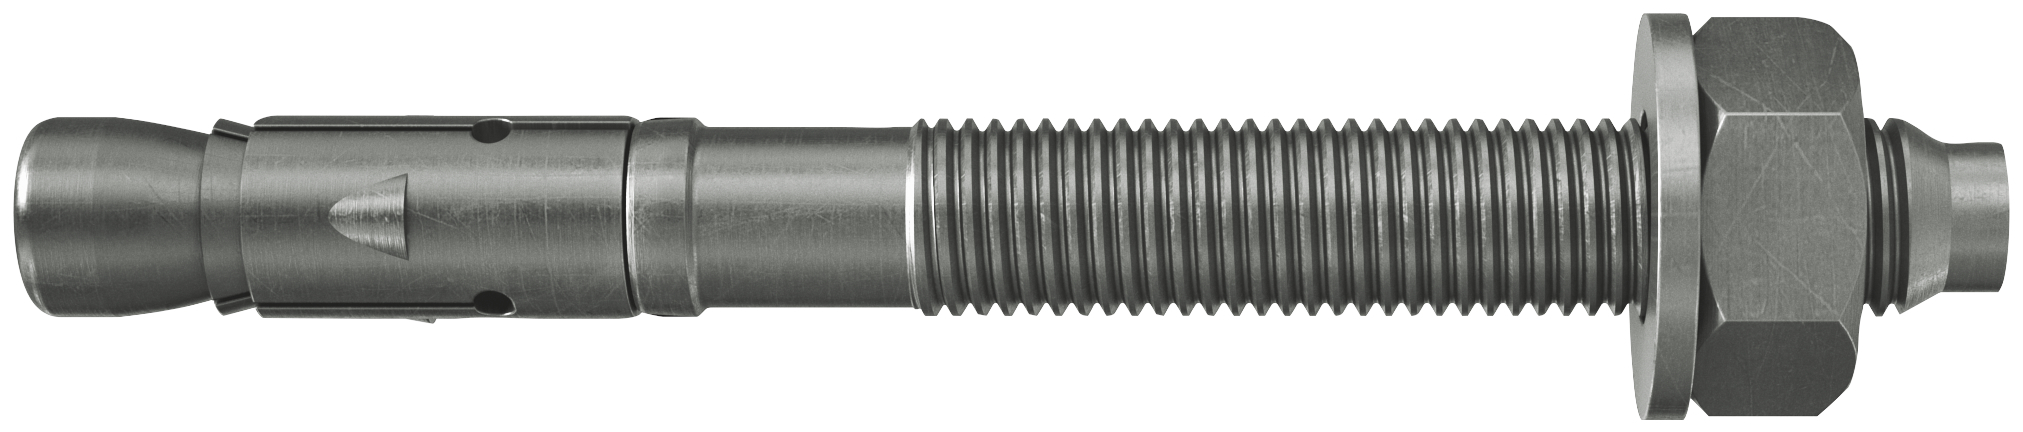 fischer Tassello acciaio FAZ II 12/100 A4 (20 Pz.) L'ancorante ad espansione ad alte prestazioni per carichi statici su calcestruzzo fessurato e per applicazioni sismiche. Versione in acciaio inossidabile con classe di resistenza alla corrosione CRC III..